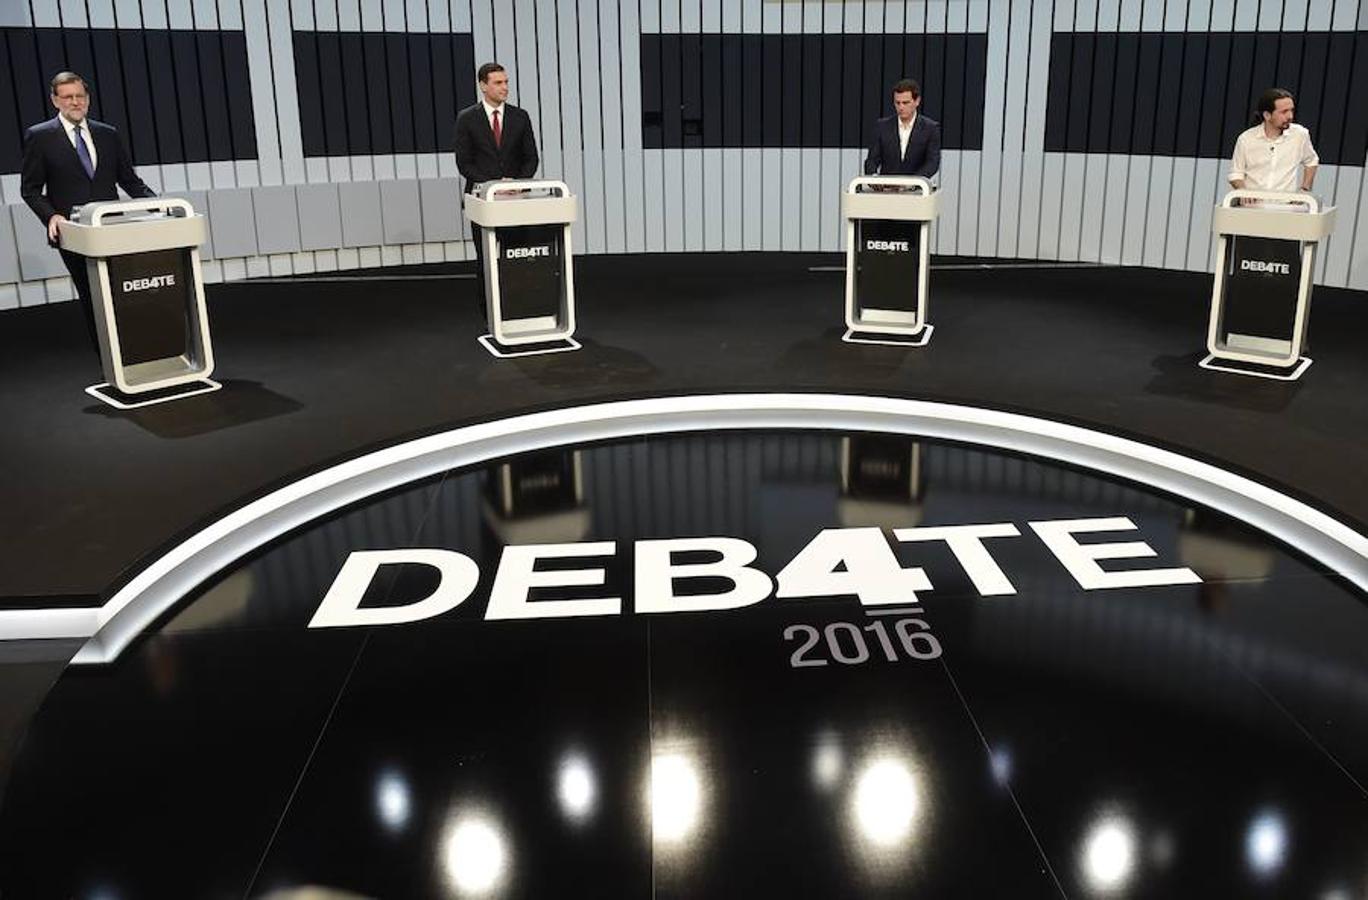 Los cuatro candidatos a la presidencia, momentos antes del comienzo del debate